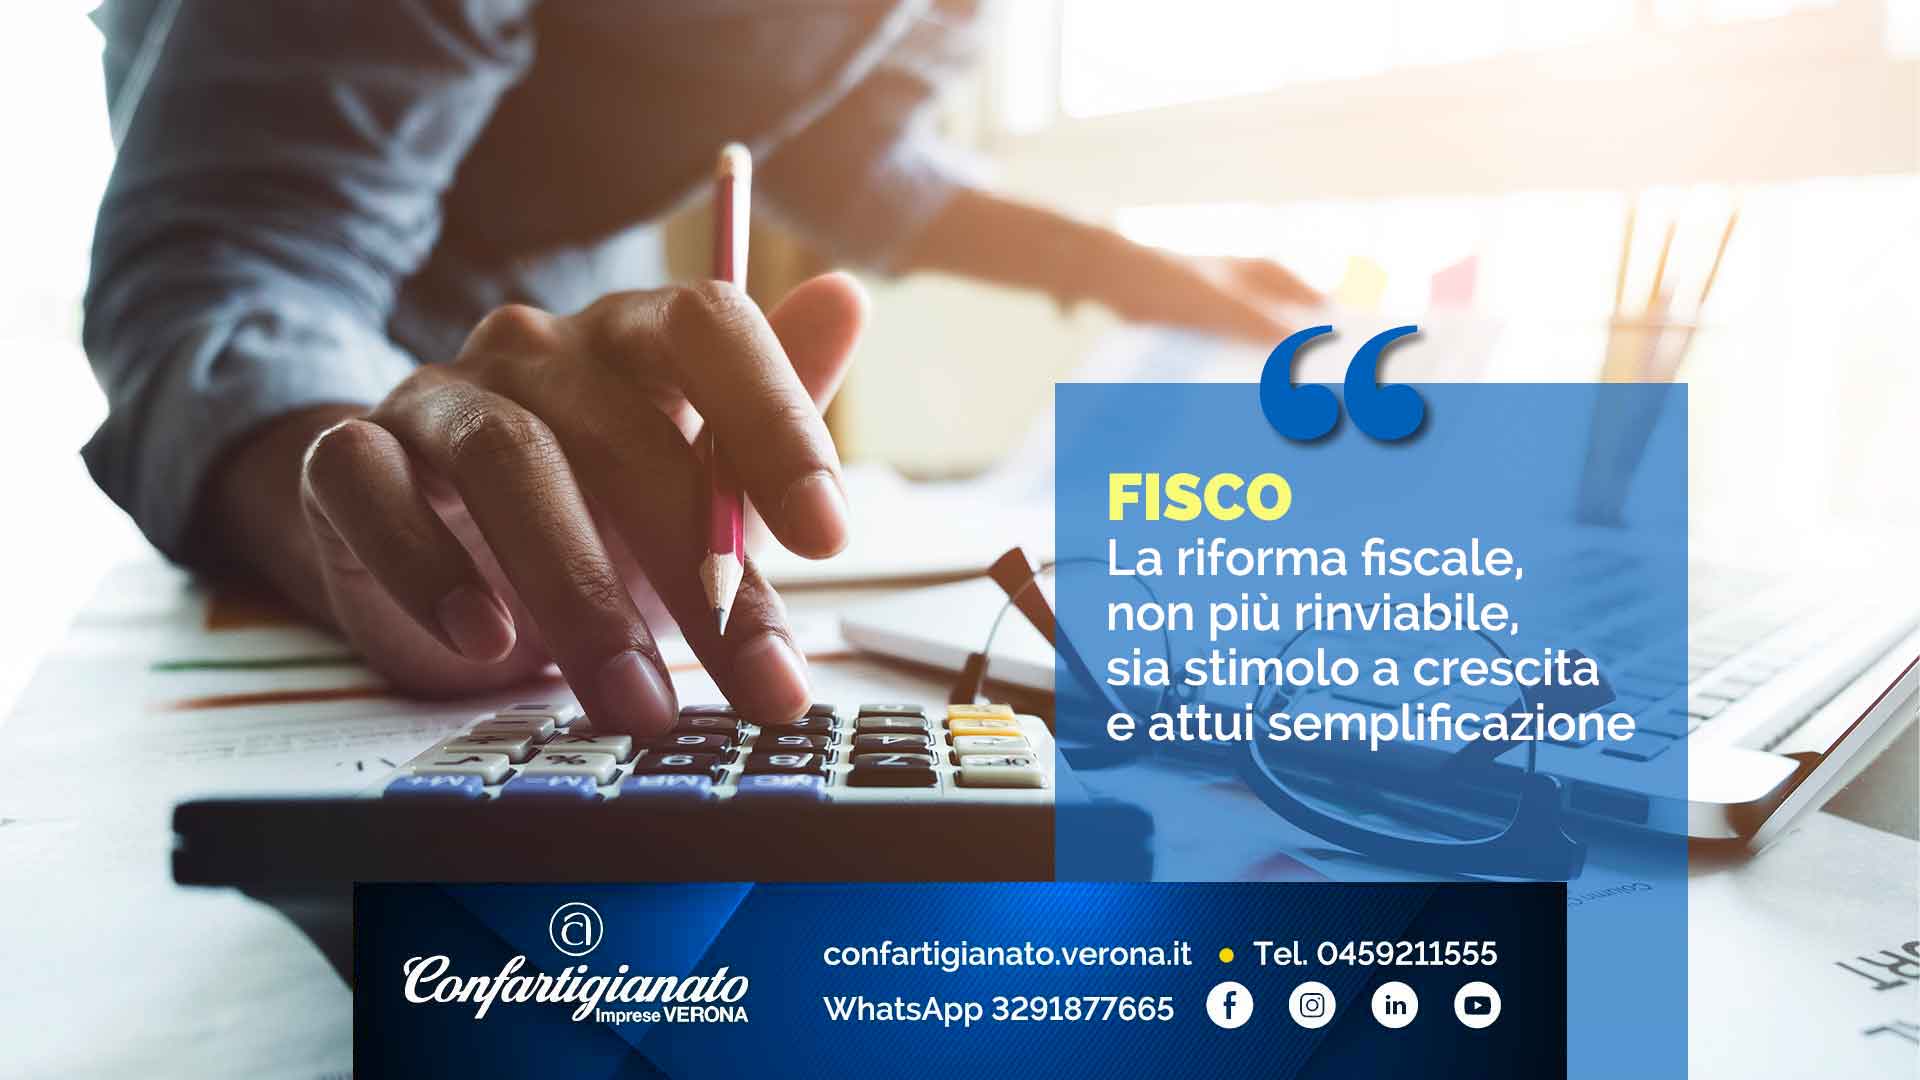 FISCO – Confartigianato: 'La riforma fiscale, non più rinviabile, sia stimolo a crescita e attui semplificazione'